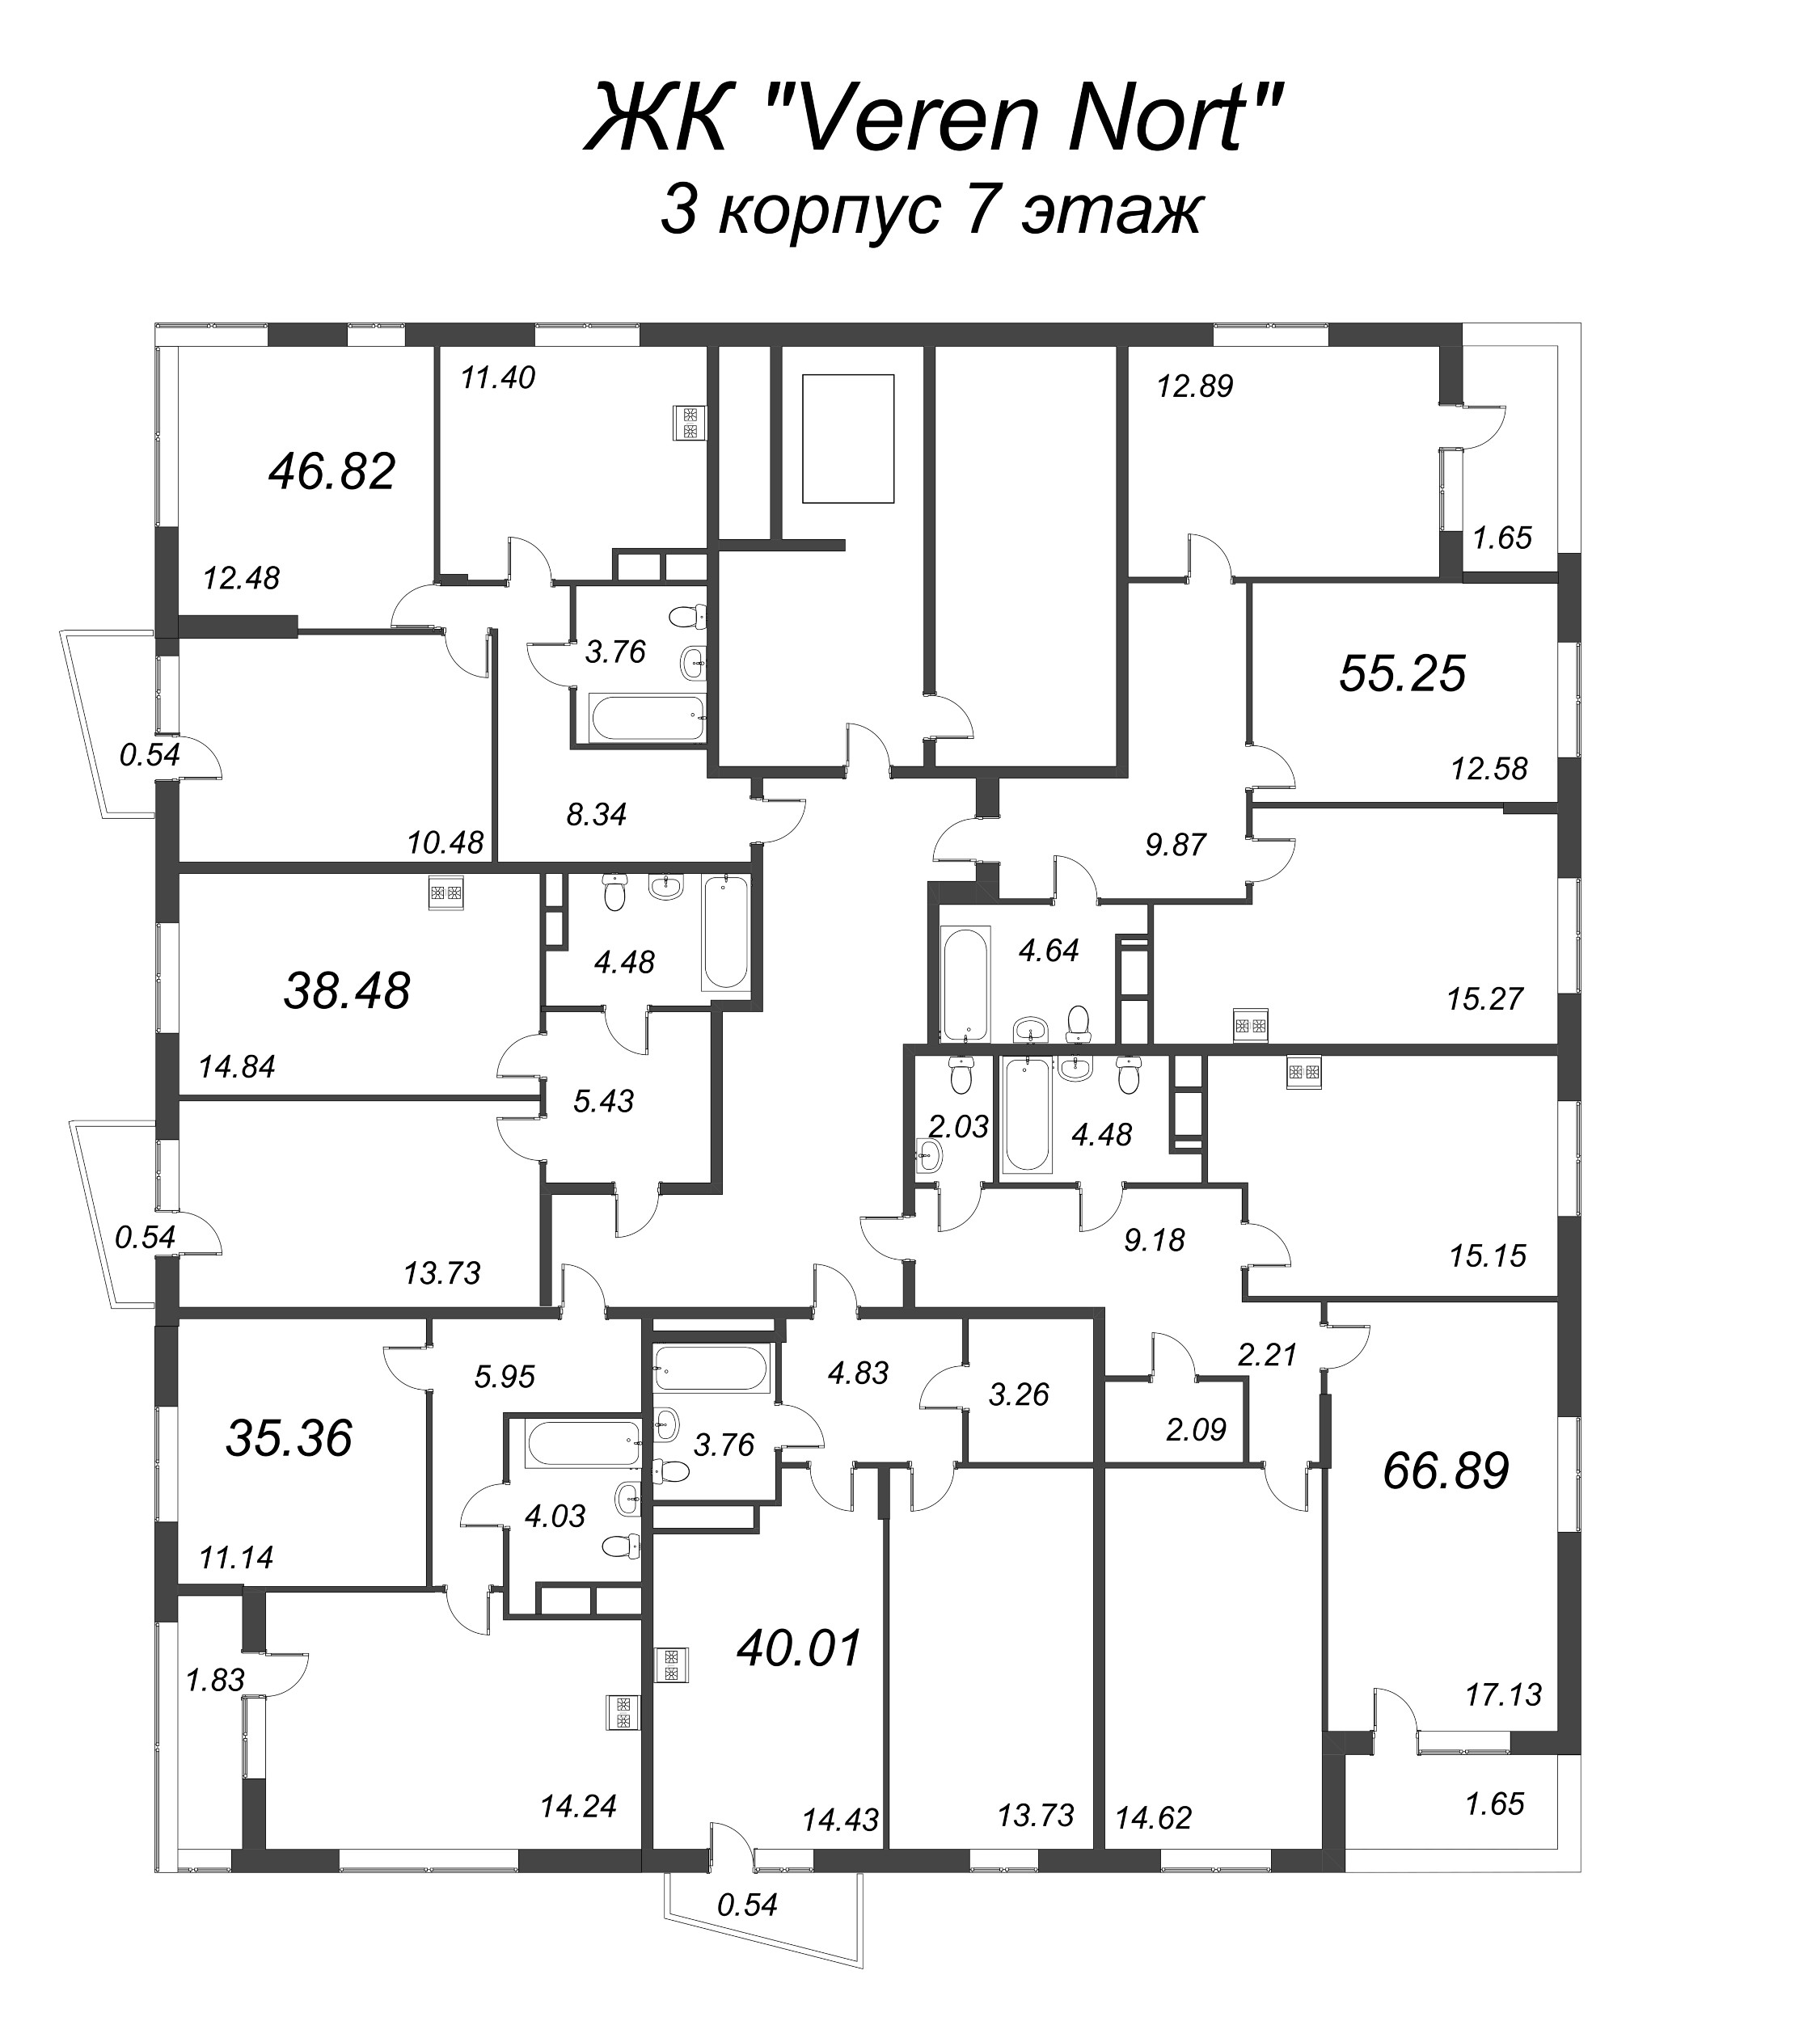 2-комнатная квартира, 47.36 м² - планировка этажа